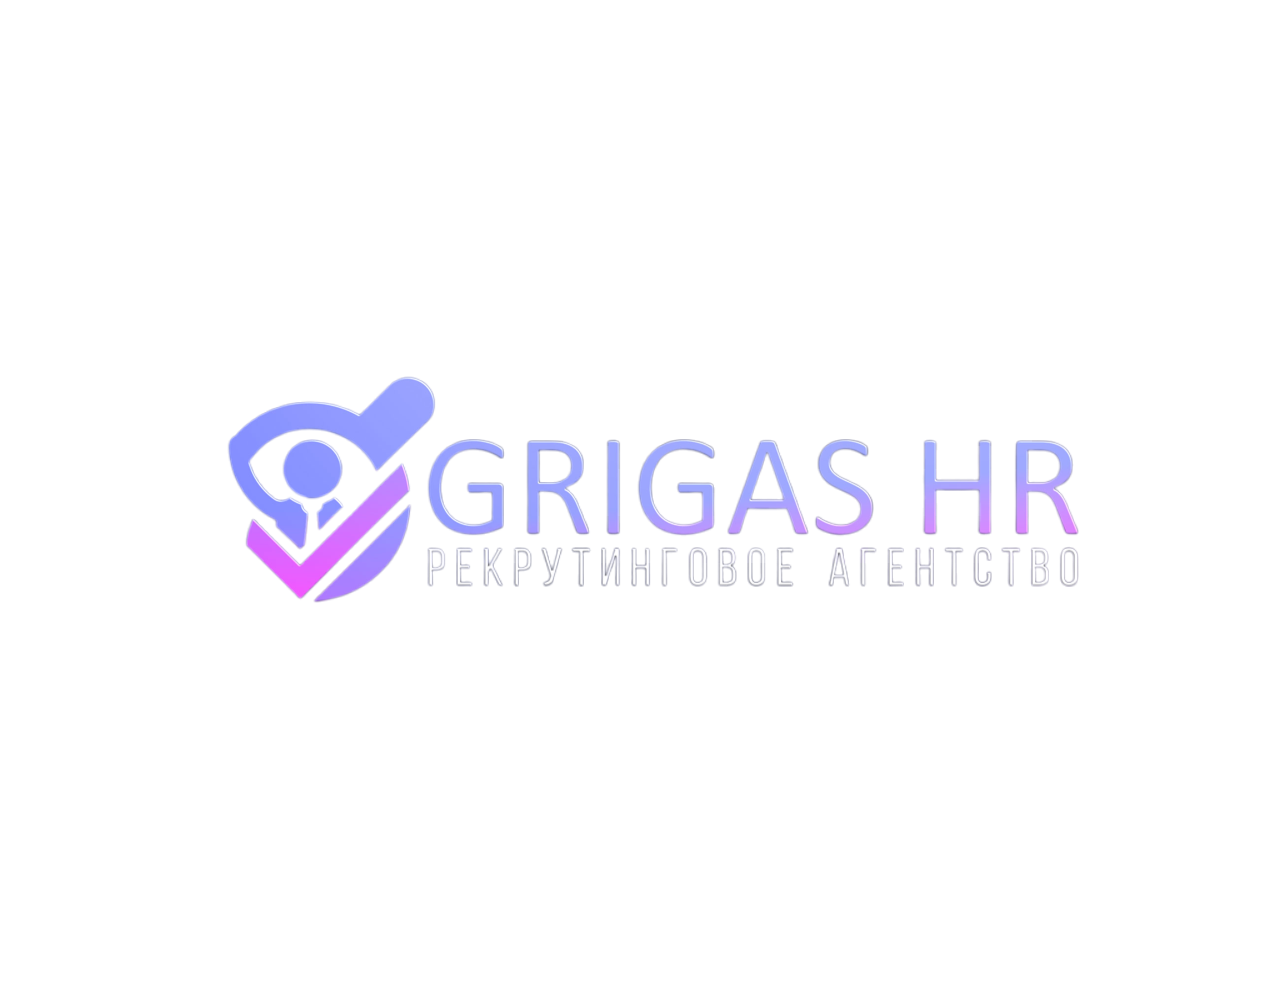 Grigas HR